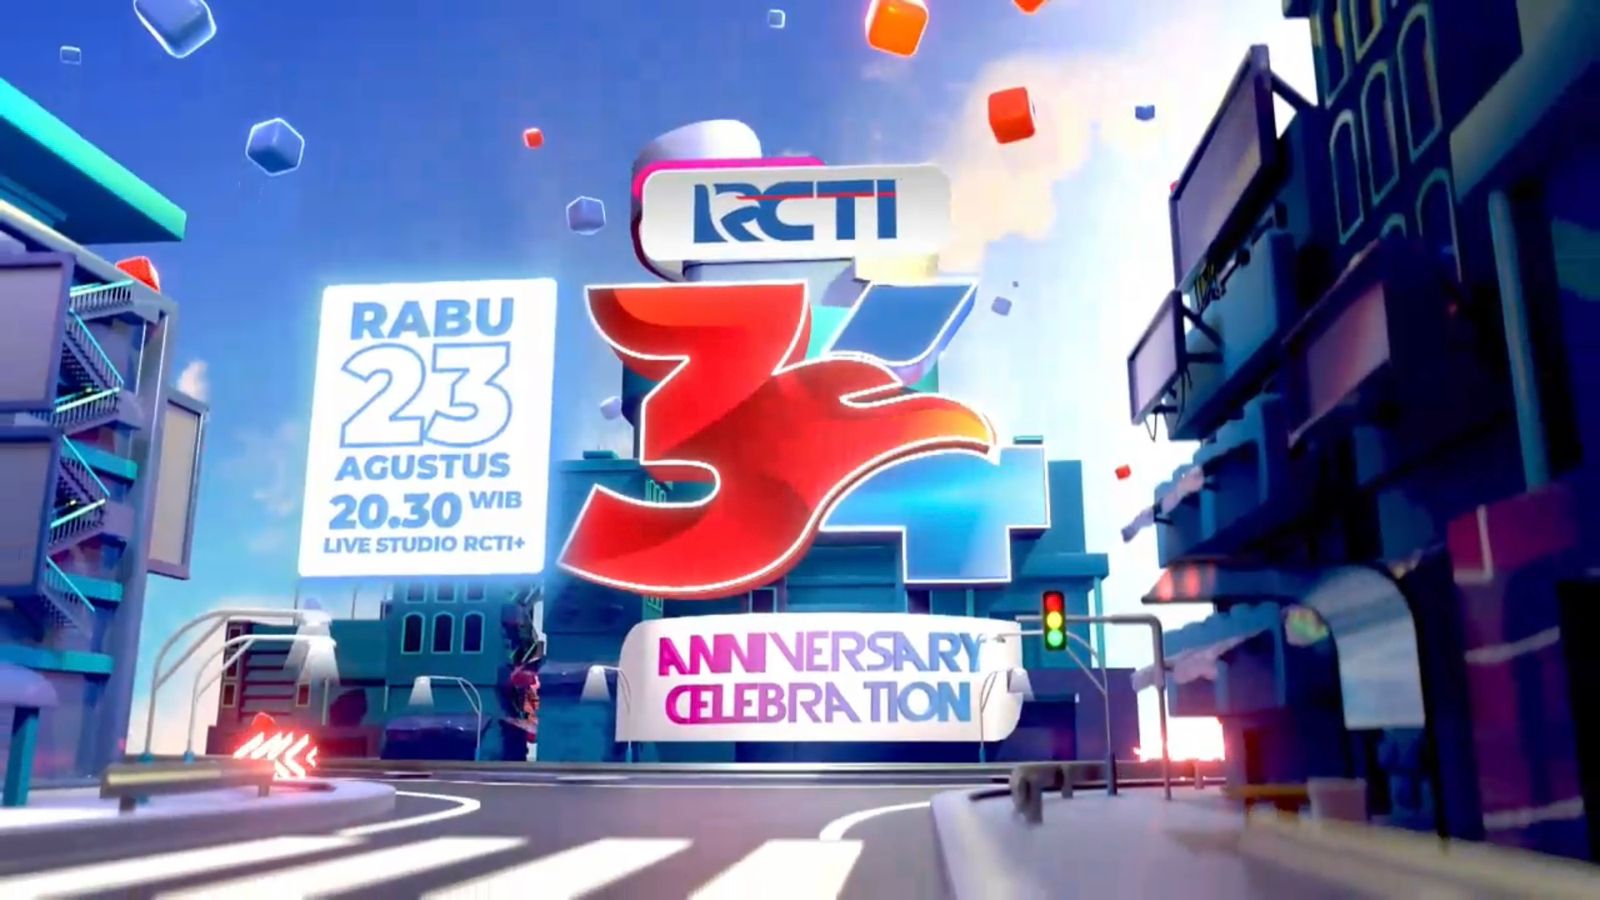 Saksikan Malam Penuh Warna Anniversary Celebration RCTI ke-34